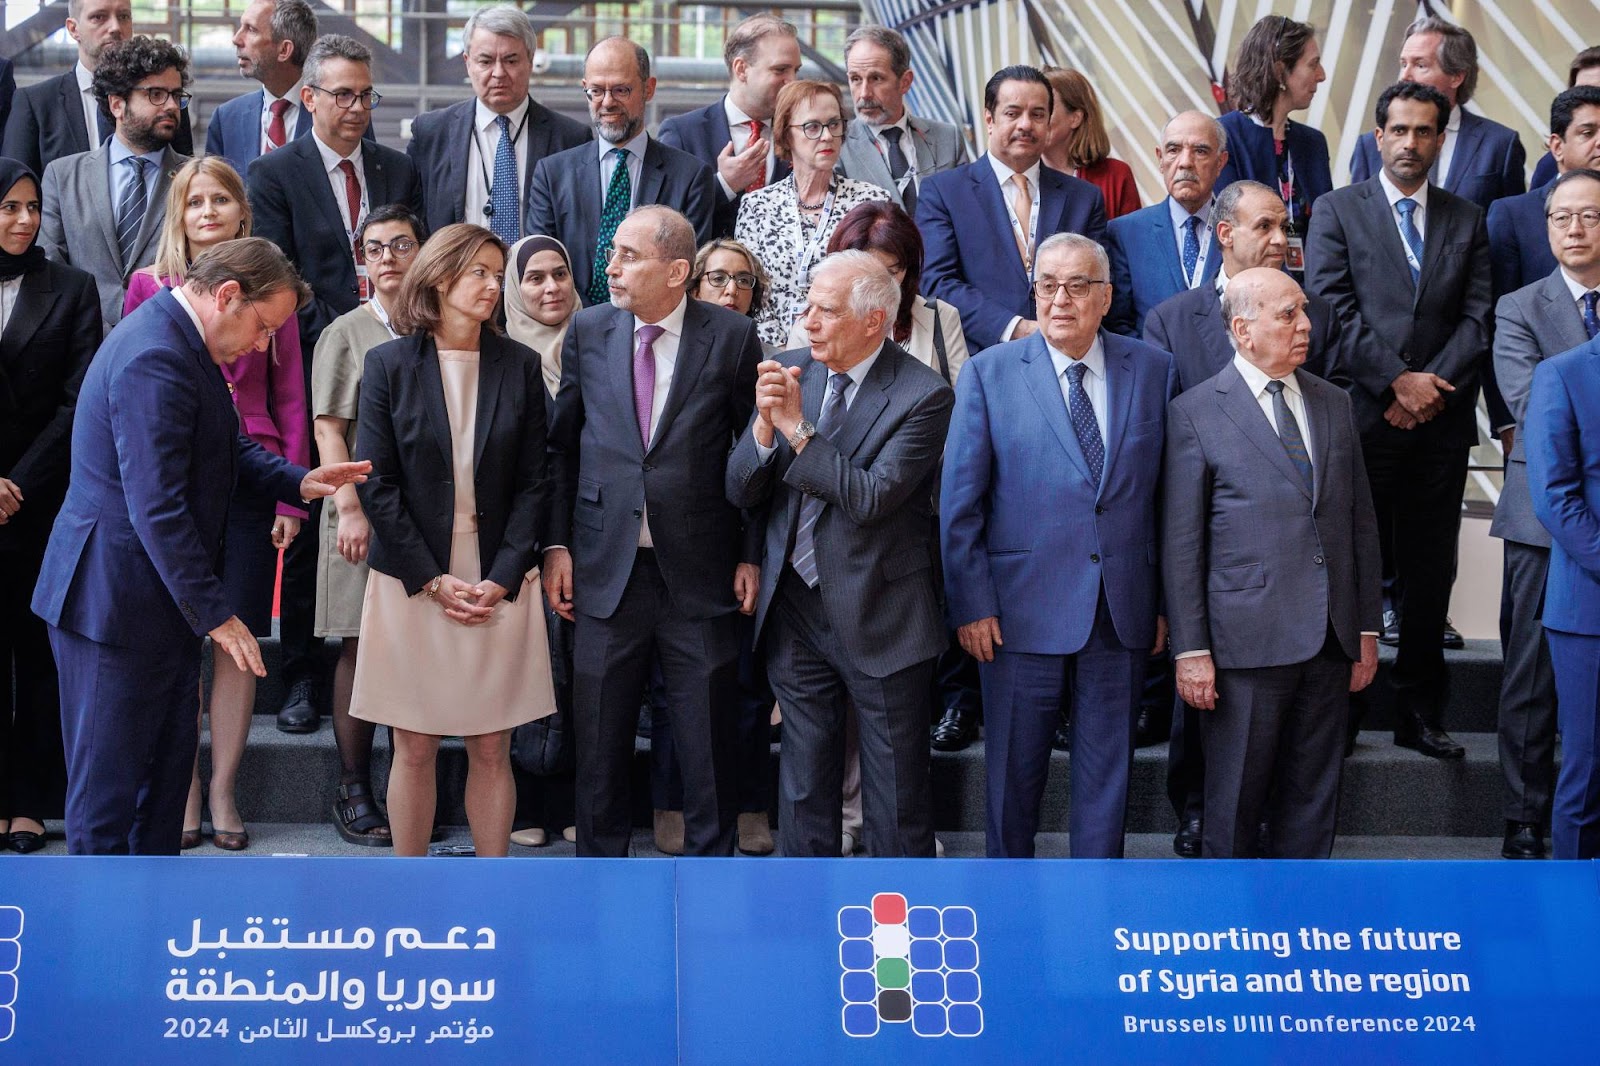 البحرة يشكر الدول المانحة في مؤتمر بروكسل ويشدد على أهمية الحل السياسي